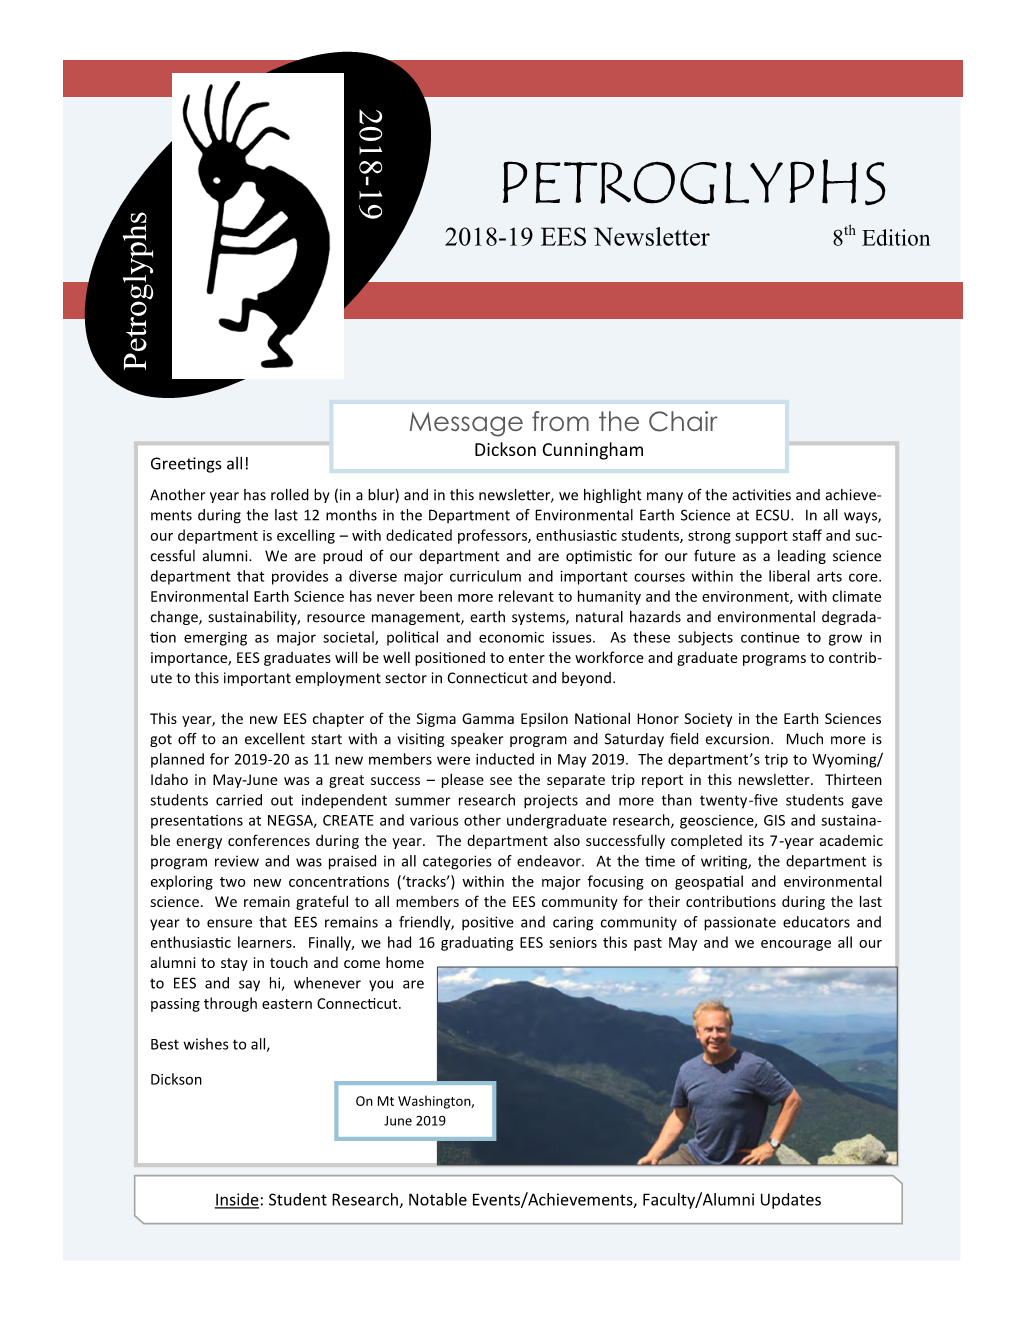 PETROGLYPHS 2018-19 EES Newsletter 8Th Edition Petroglyphs